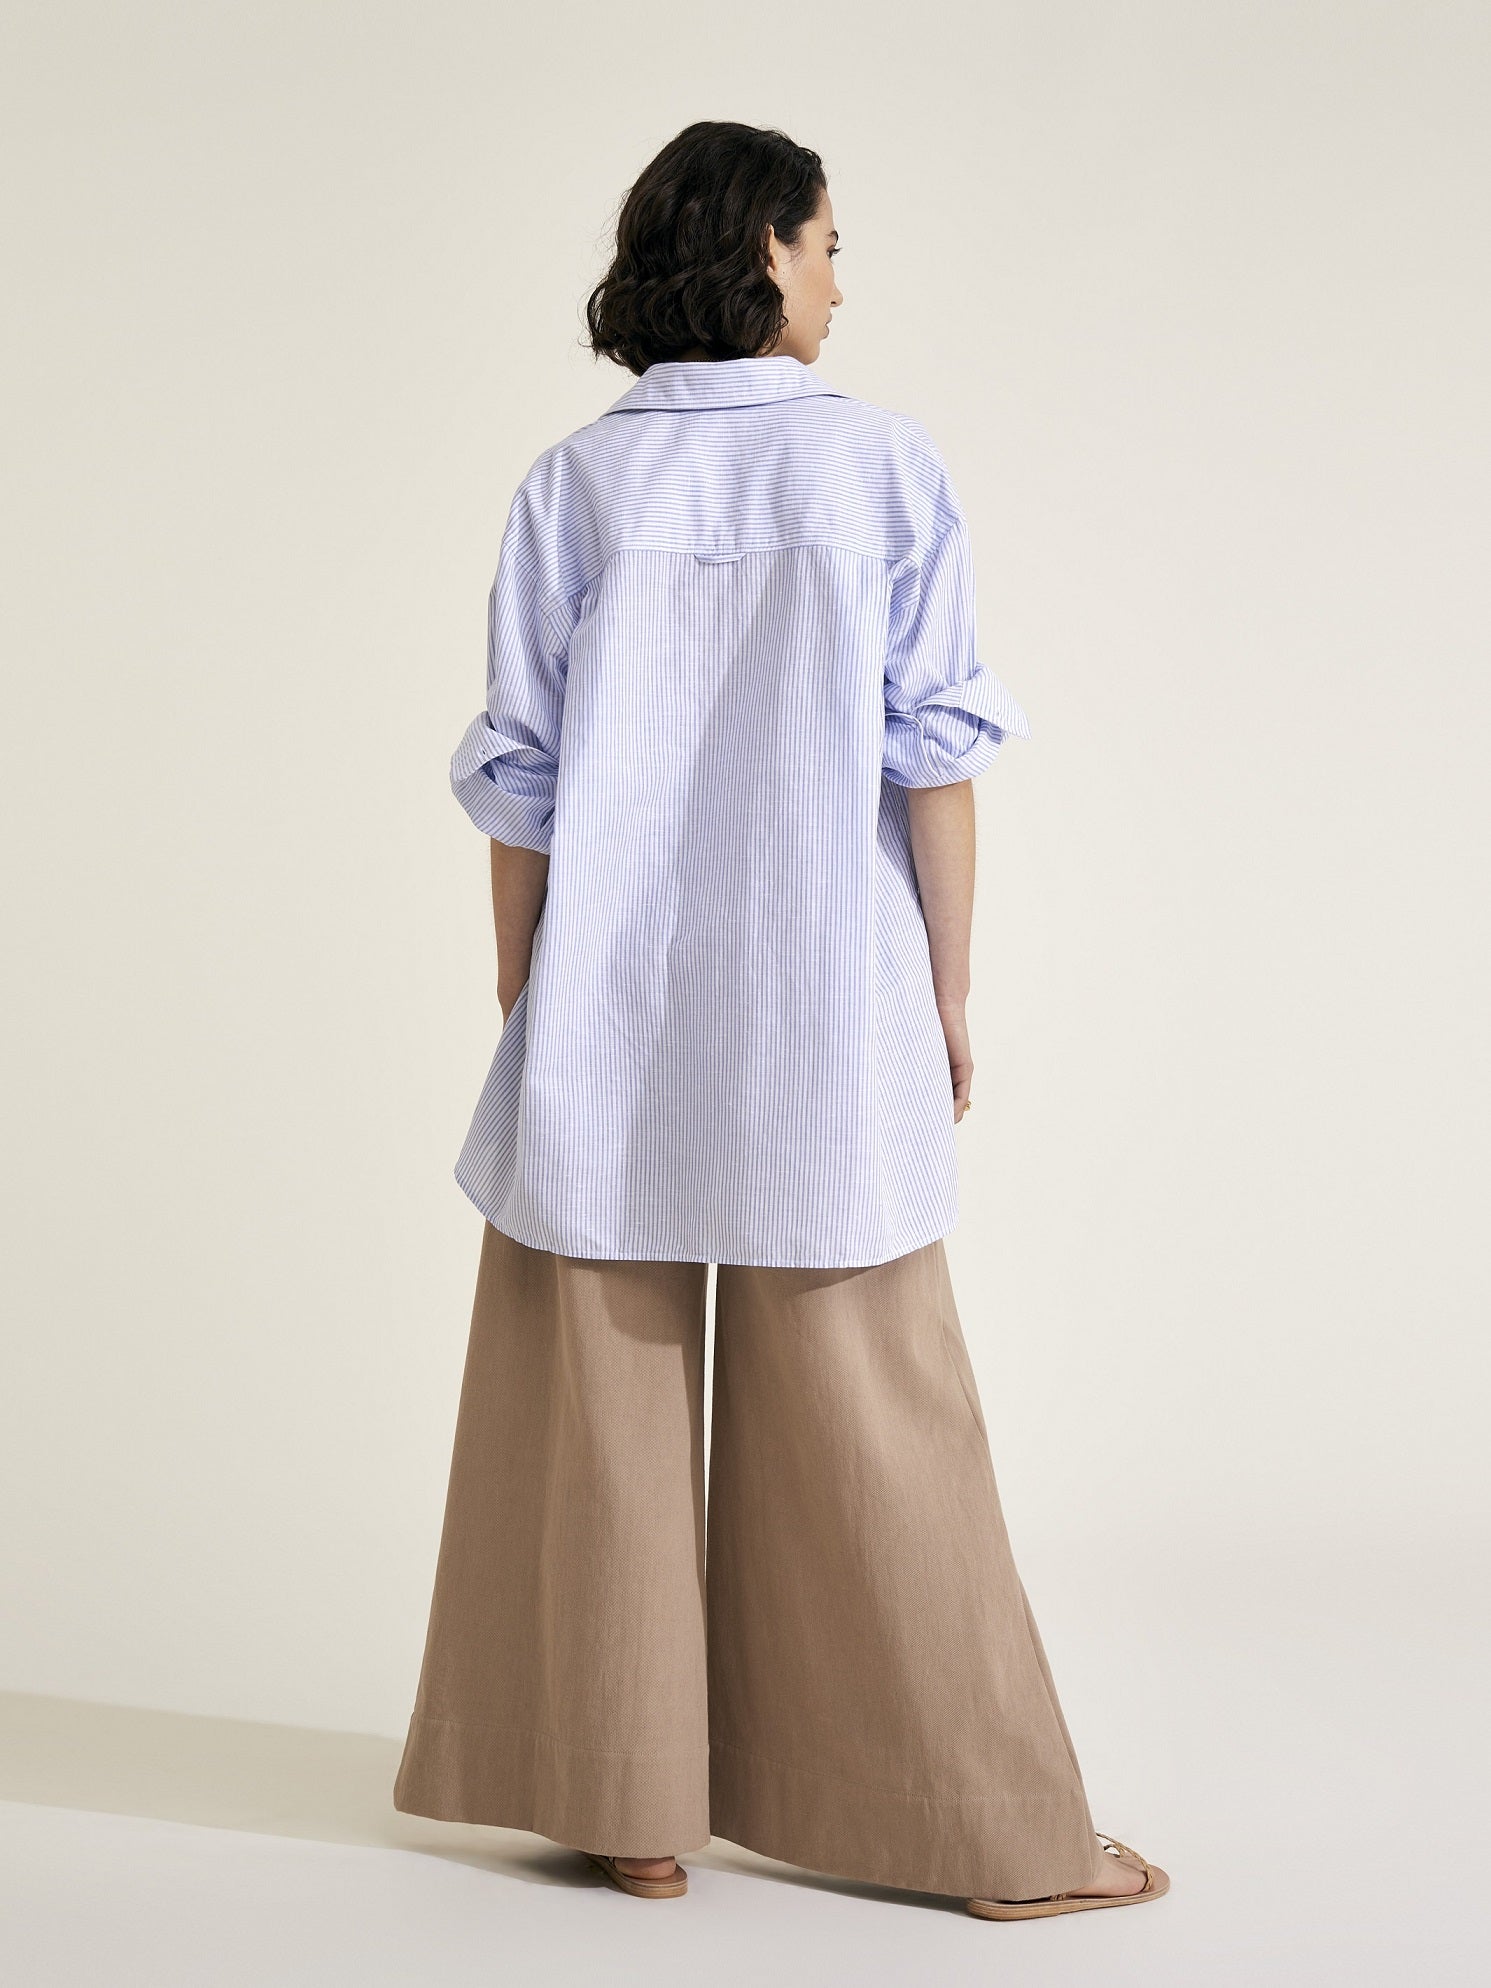 DELIA - Blue and White Stripe Linen Weave Shirt - Mondo Corsini